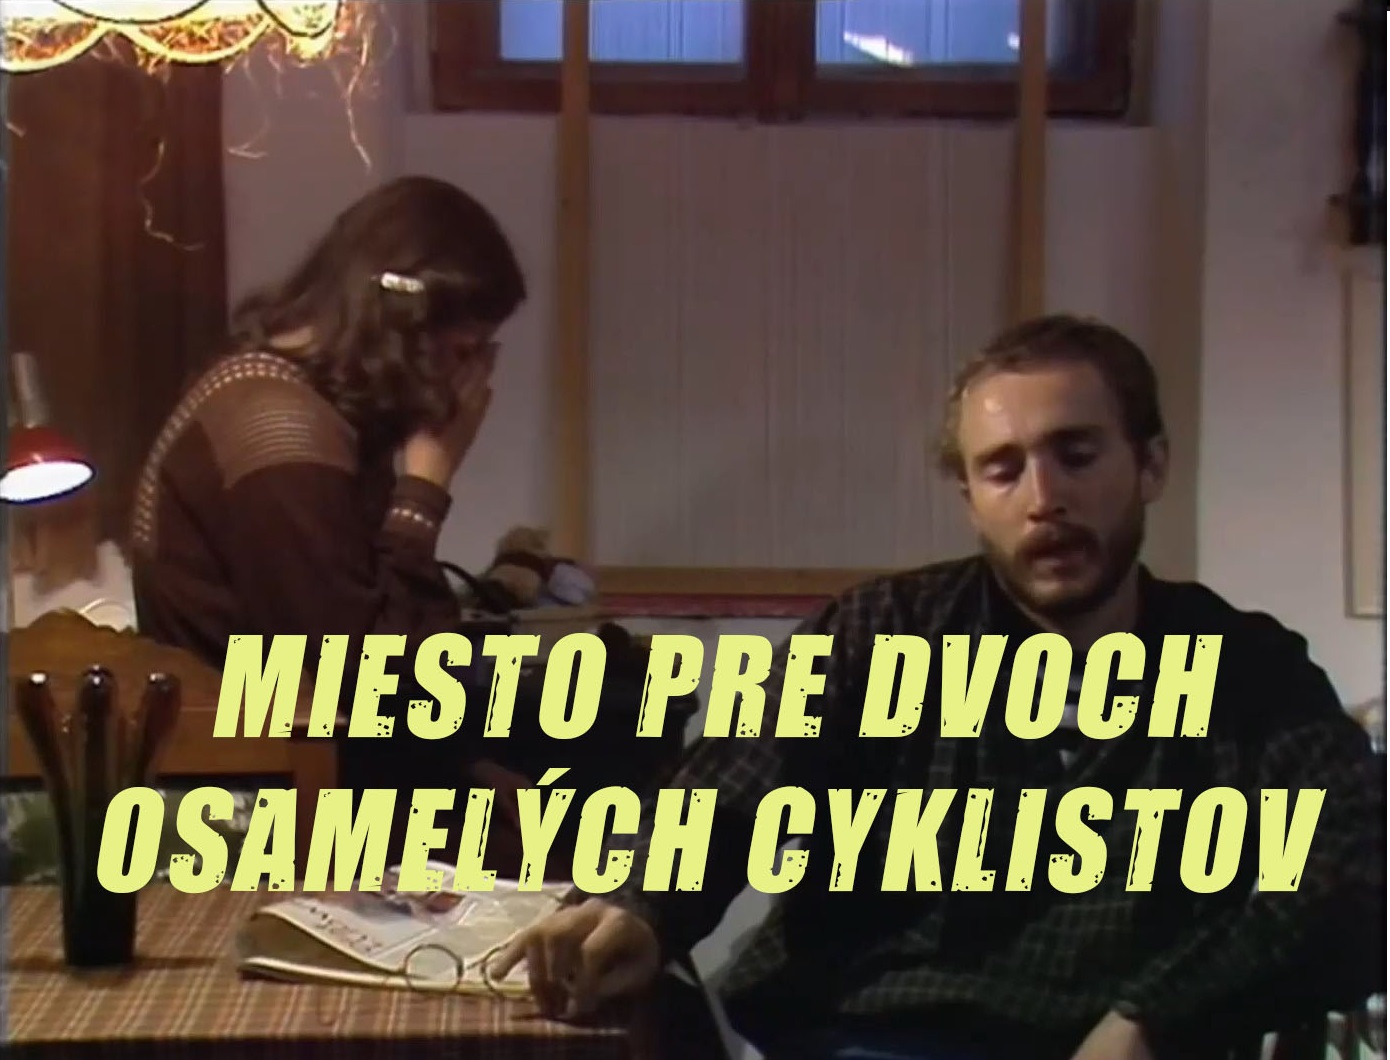 Stiahni si Filmy CZ/SK dabing Miesto pre dvoch osamelych cyklistov (1983)(SK)[TvRip] = CSFD 53%